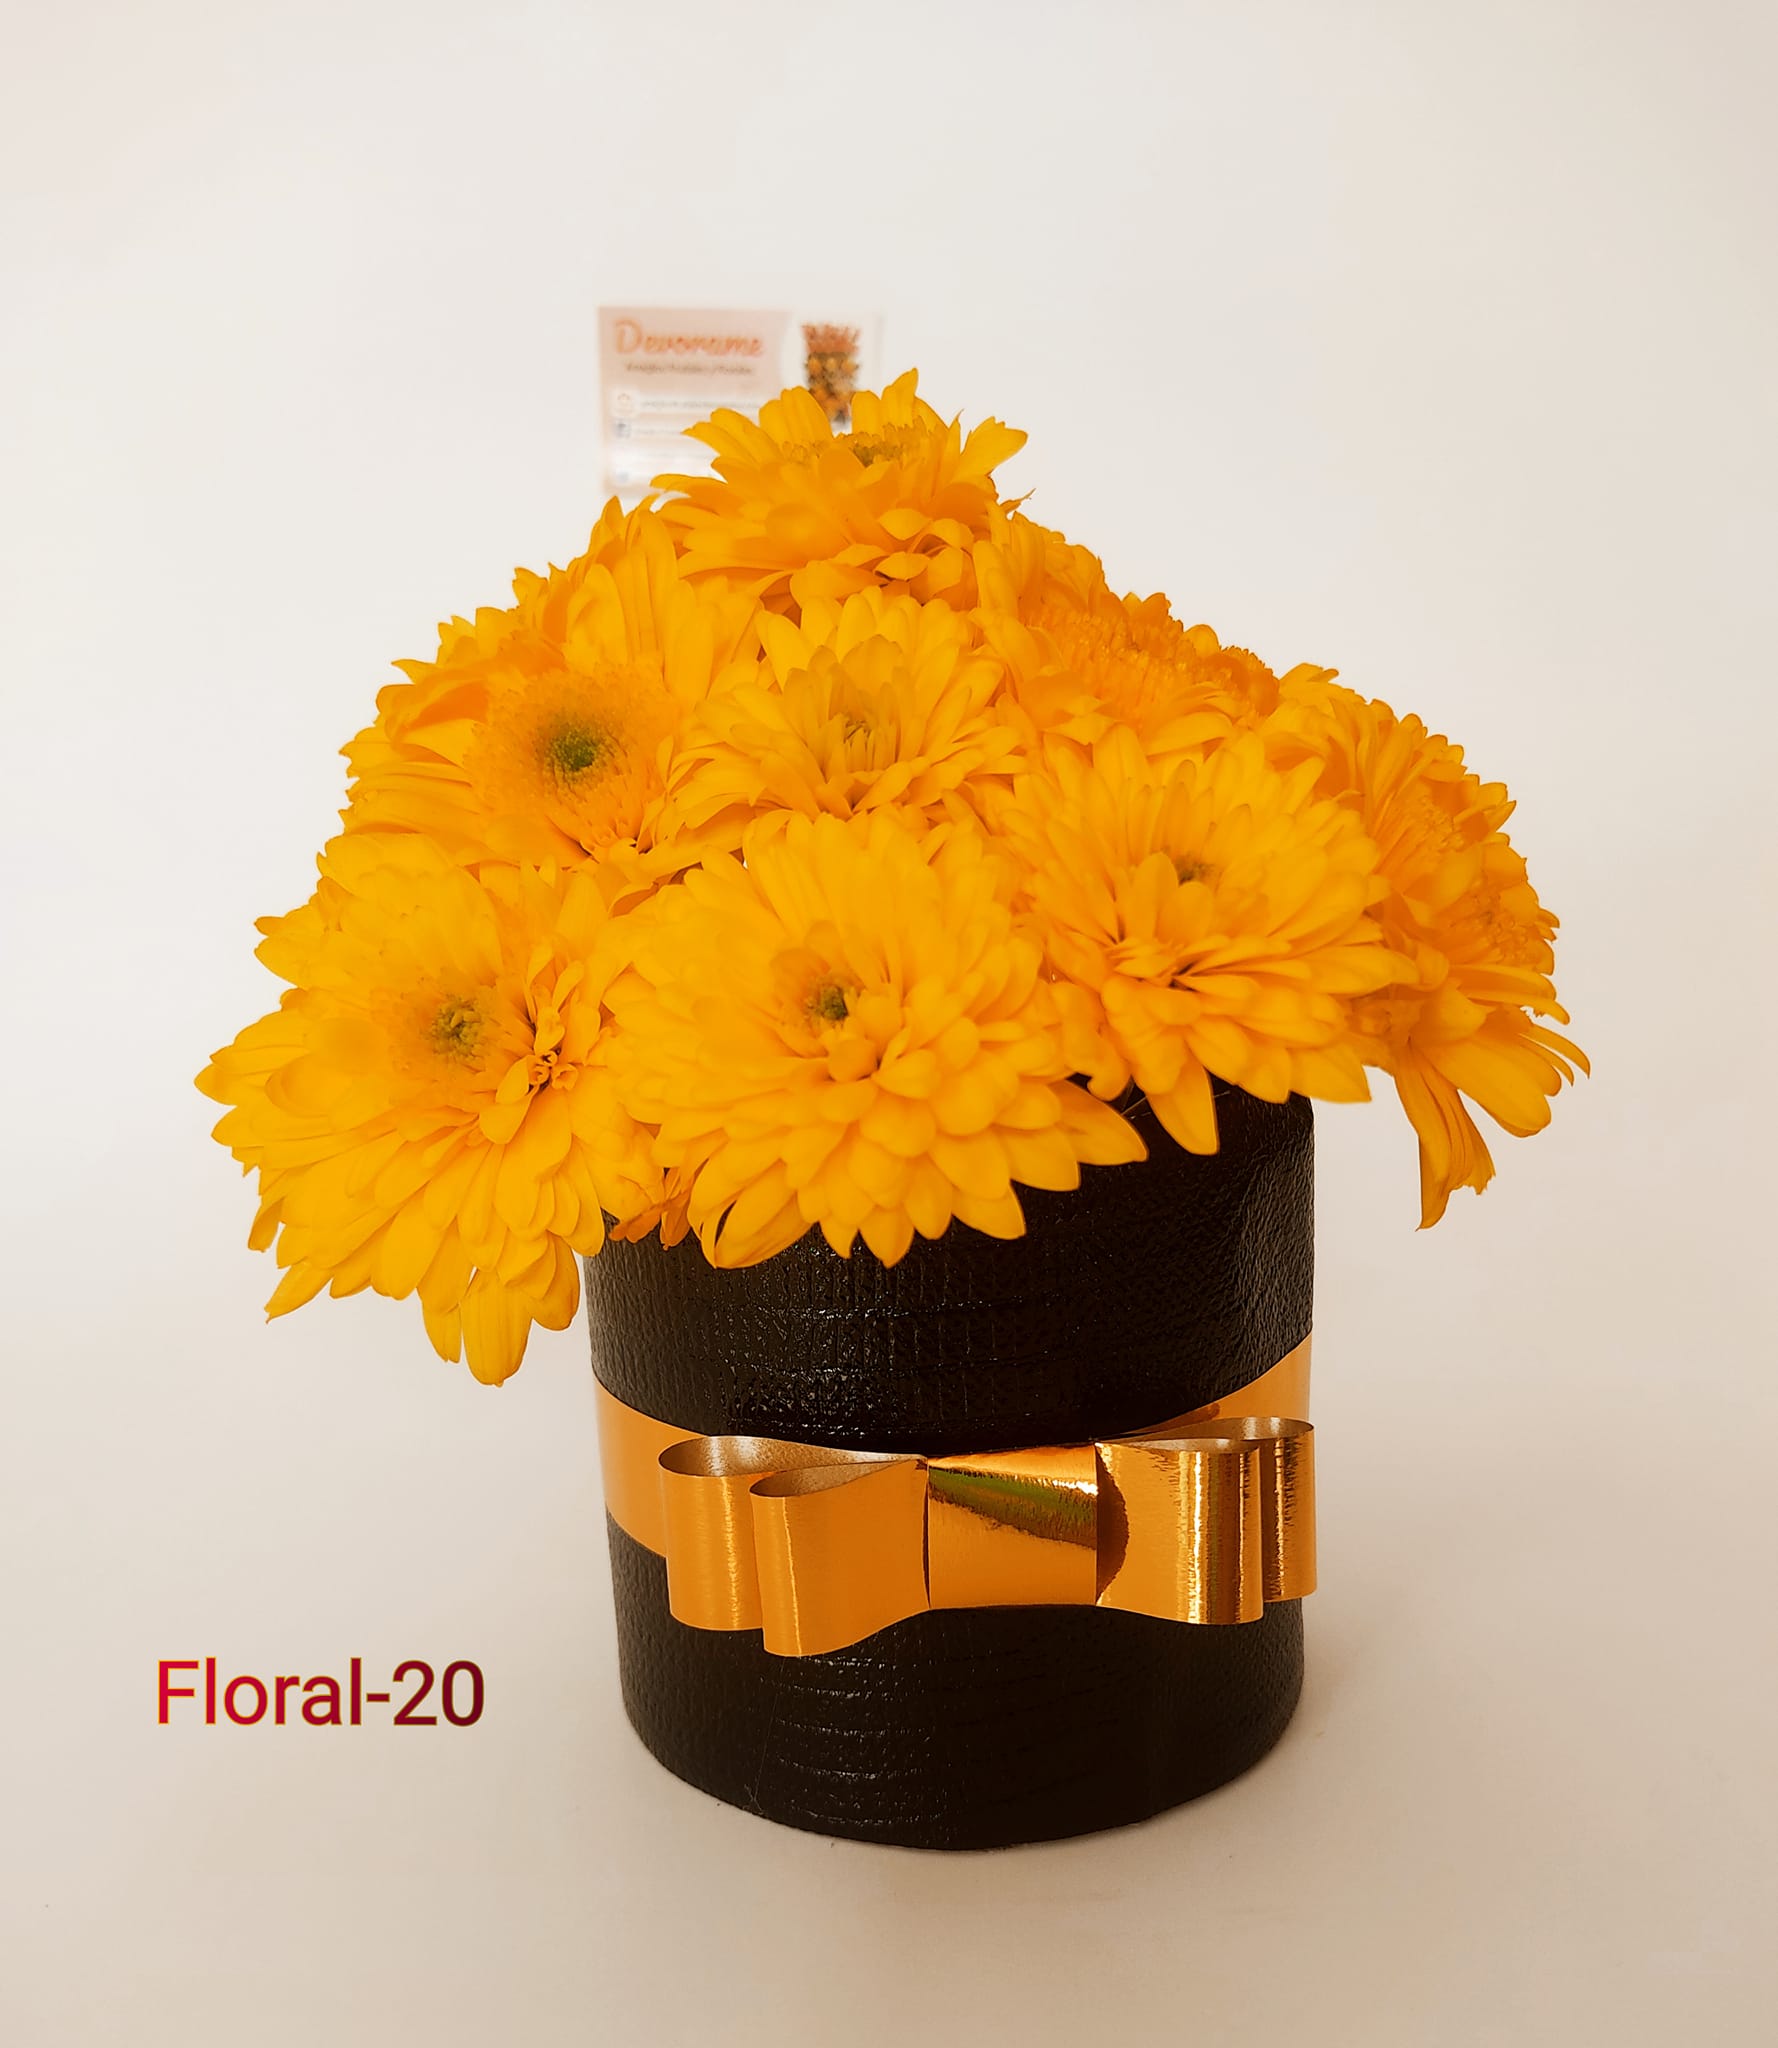 Arreglo frutal Floral-20 devorame